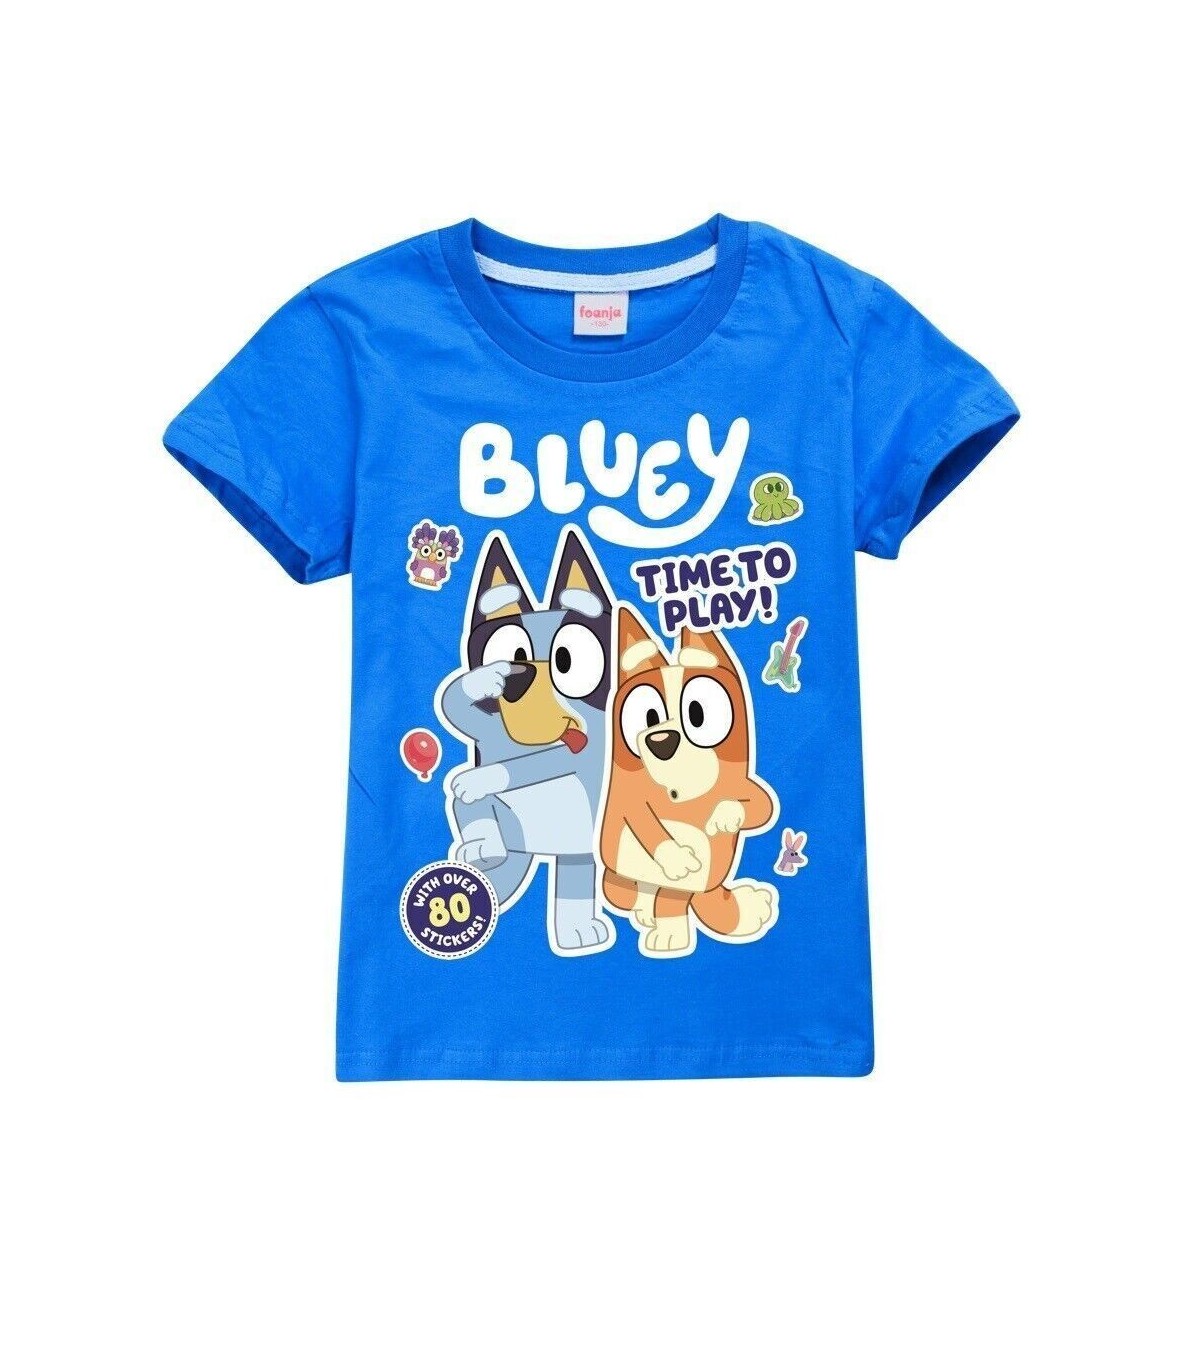 👕 Camisetas de algodón para niños: ¡Bingo y Bluey te acompañan en